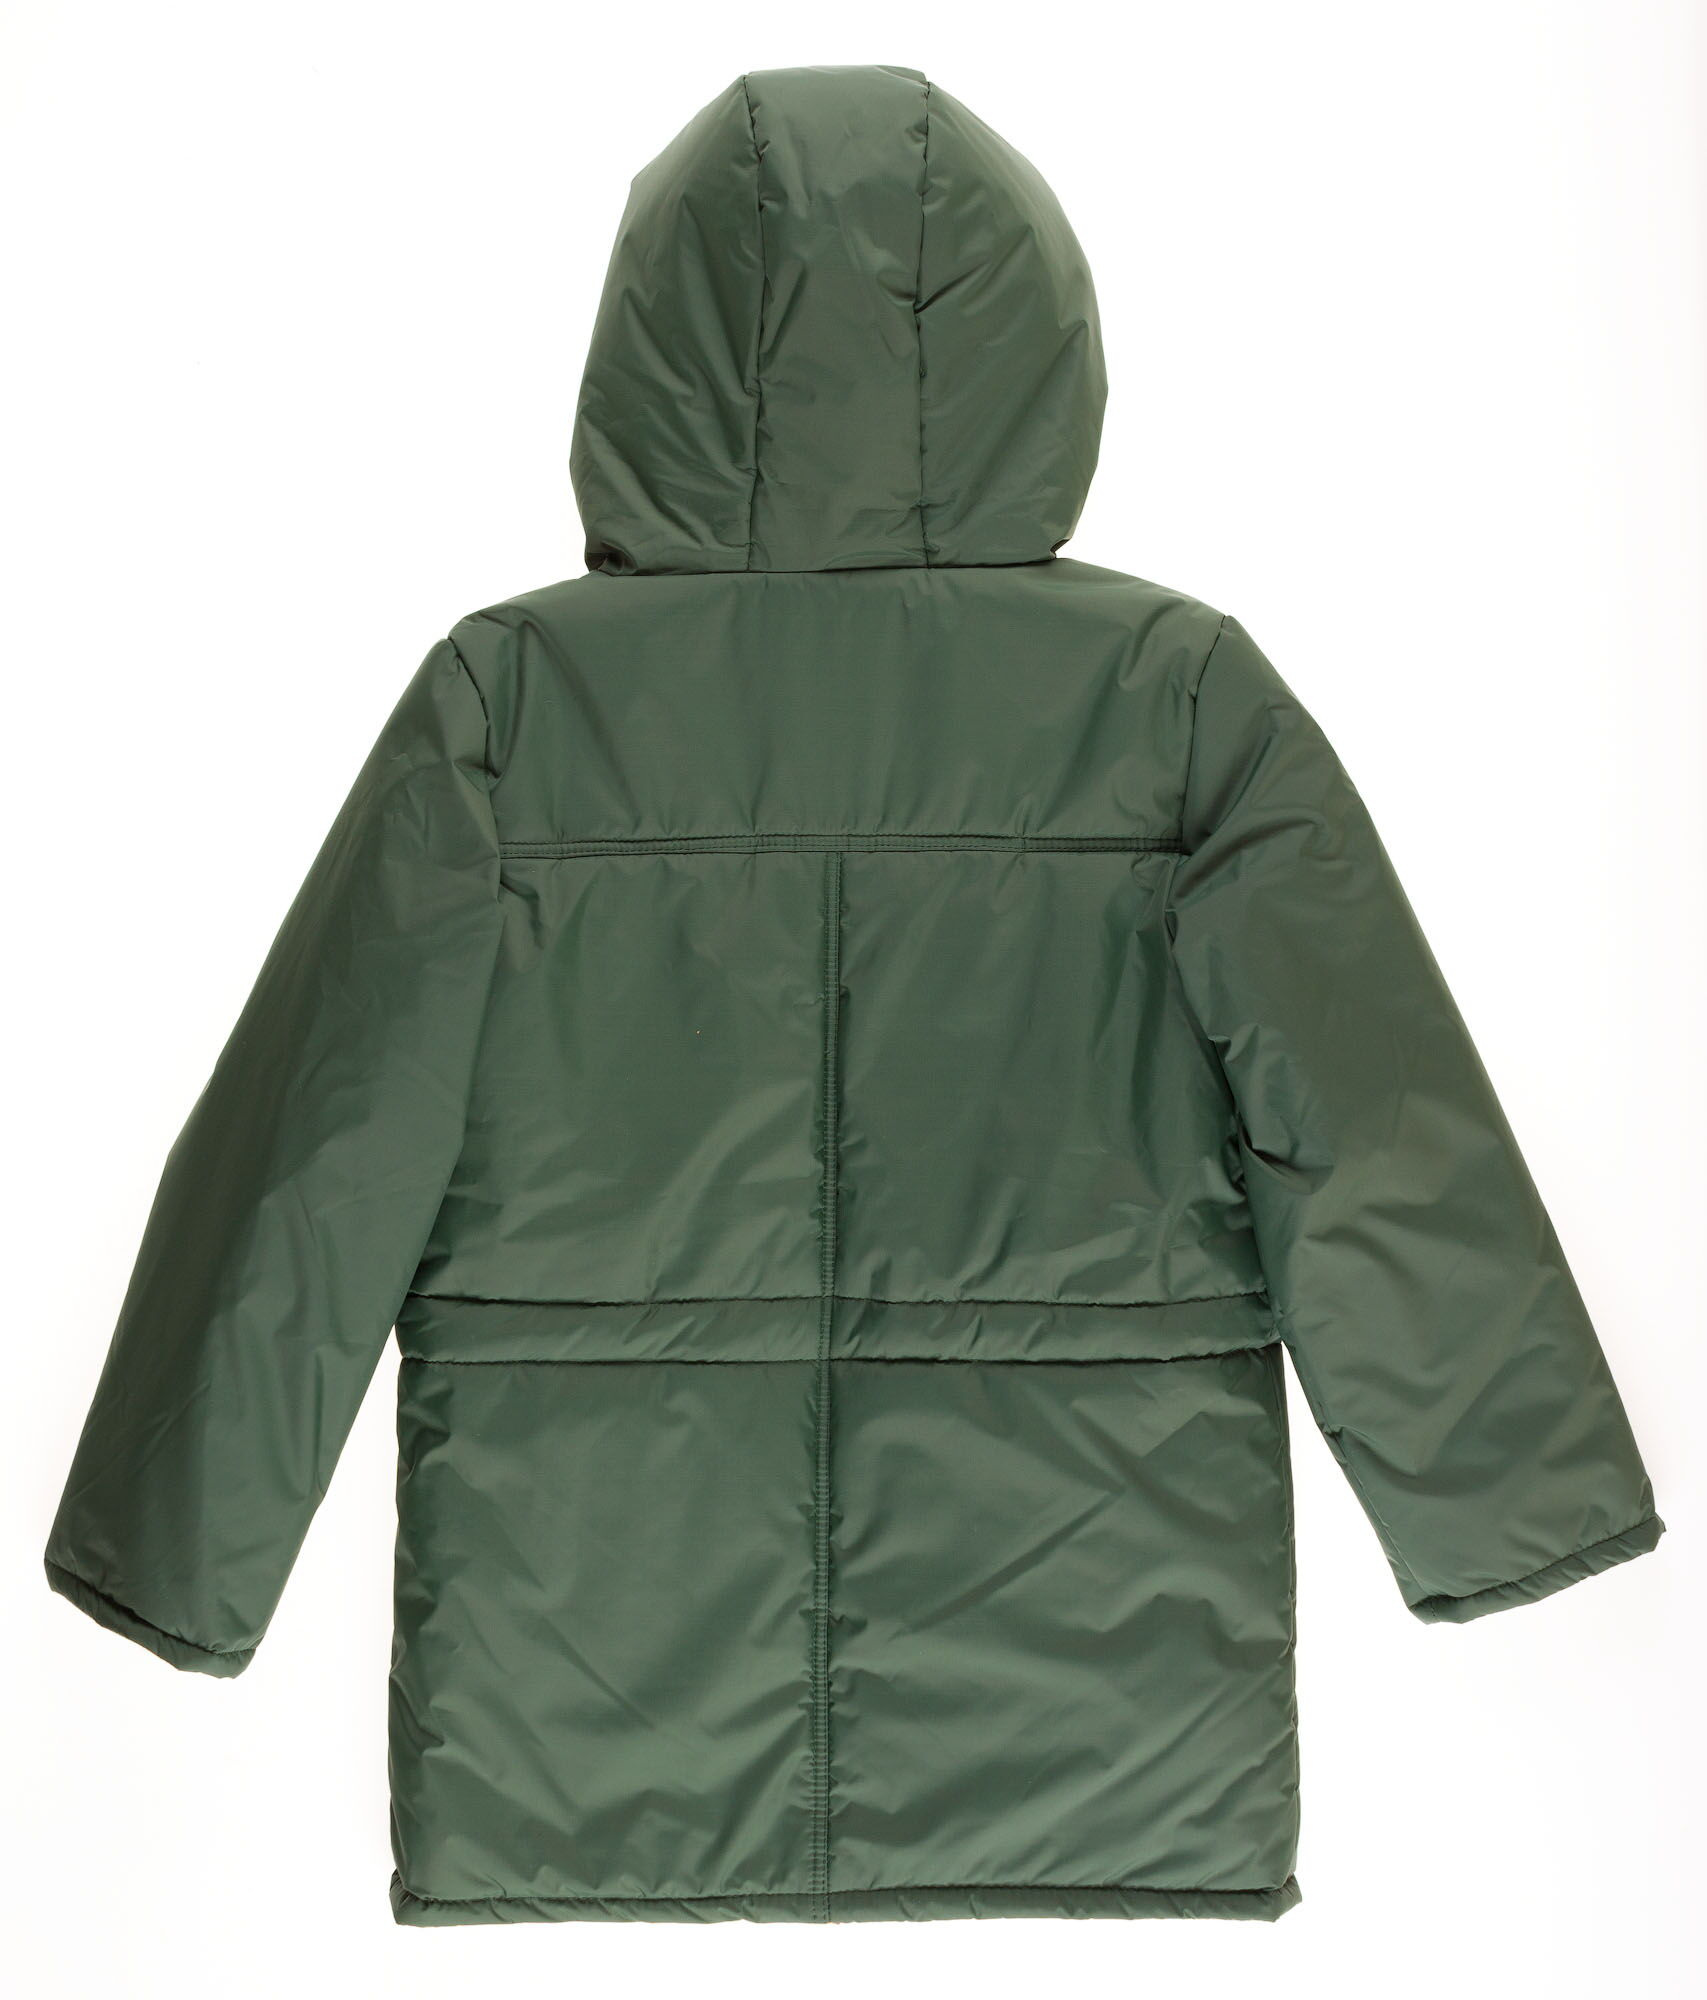 Куртка для мальчика ОДЯГАЙКО зеленая 22146О - размеры